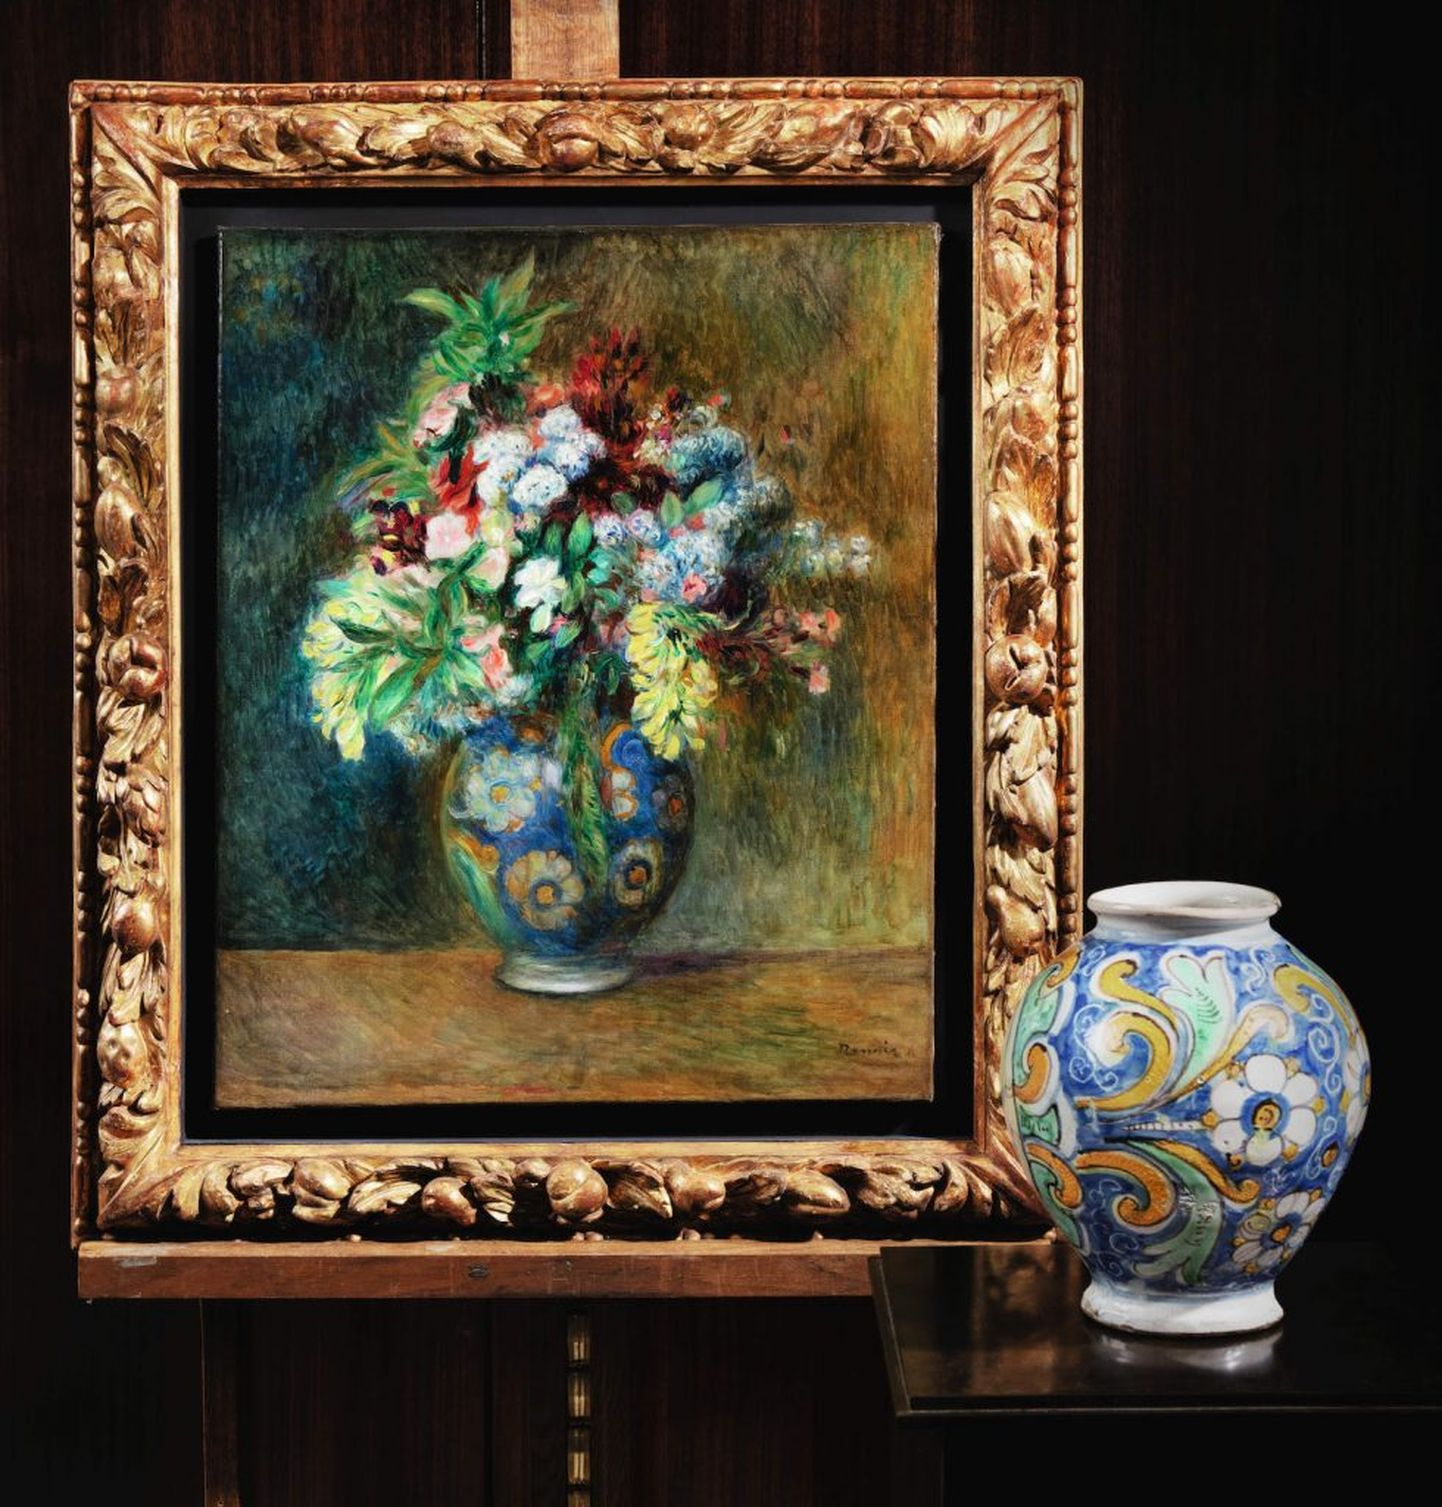 Натюрморт «Цветы в вазе» был написан Ренуаром в 1878 году.